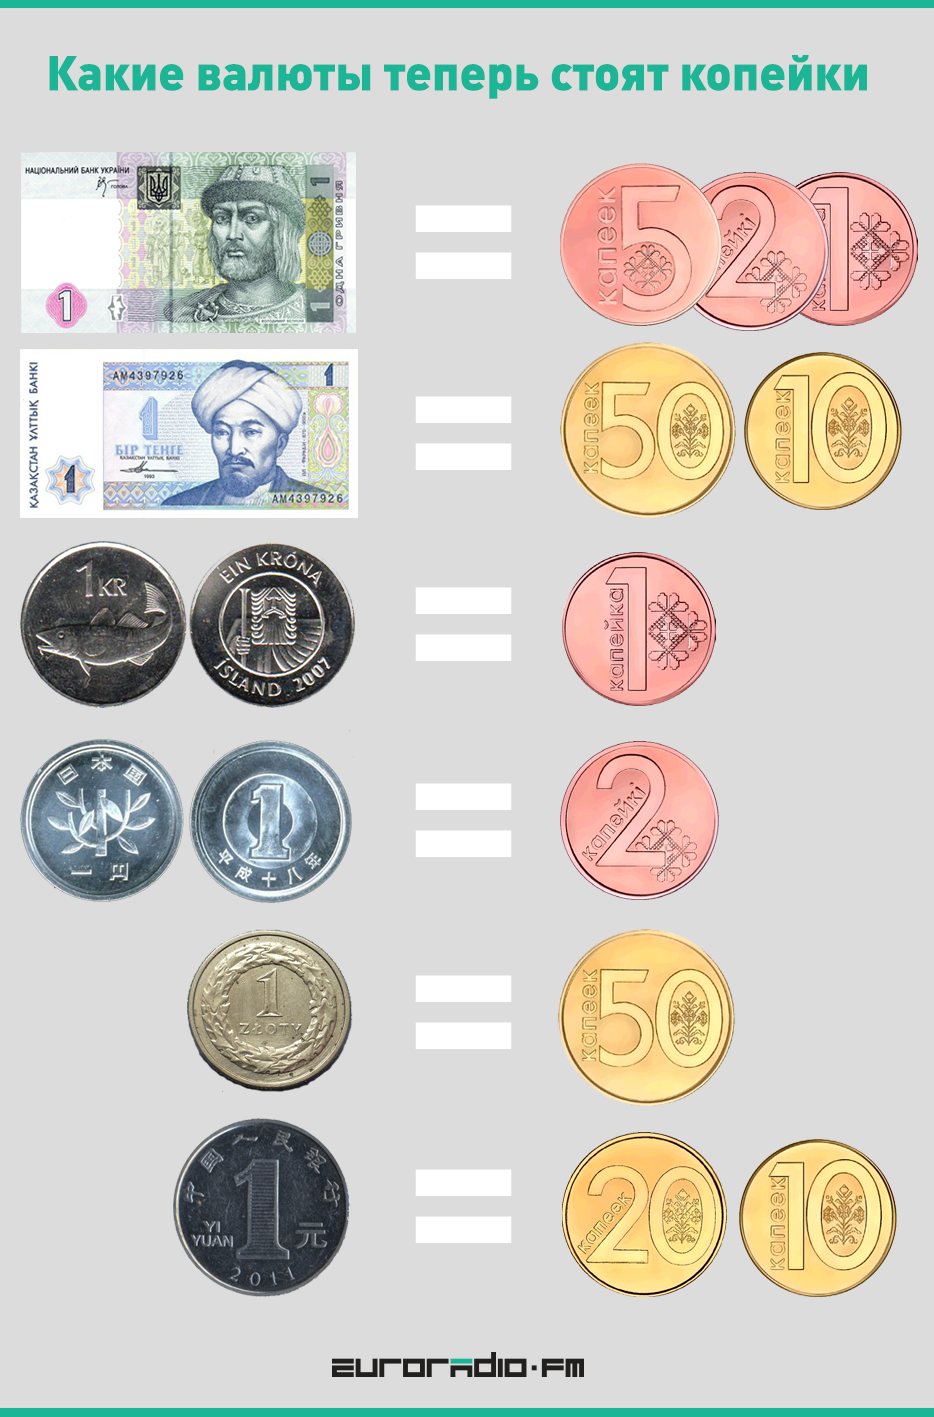 Какие валюты теперь стоят копейки